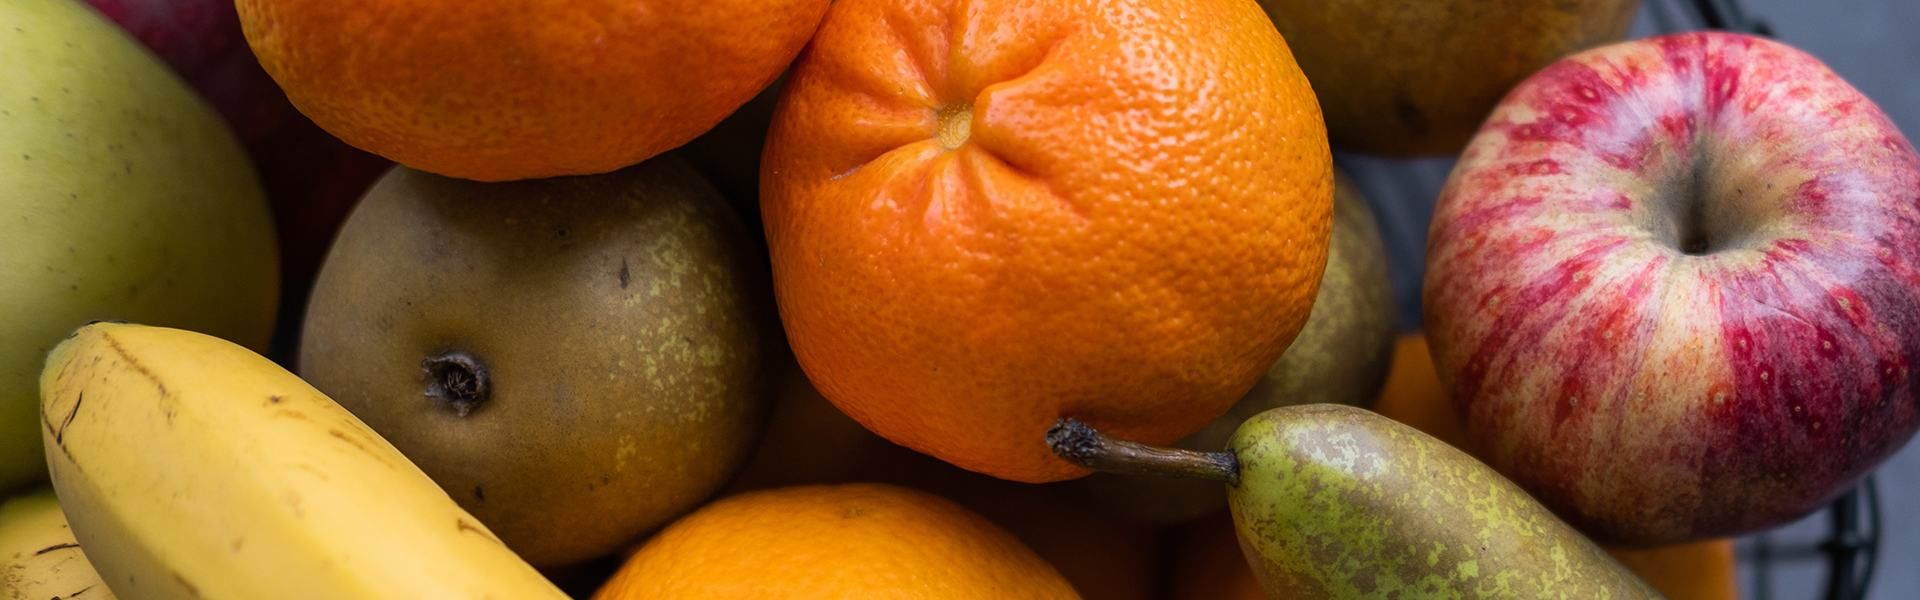 9 owoców, które wywołują reakcje alergiczne